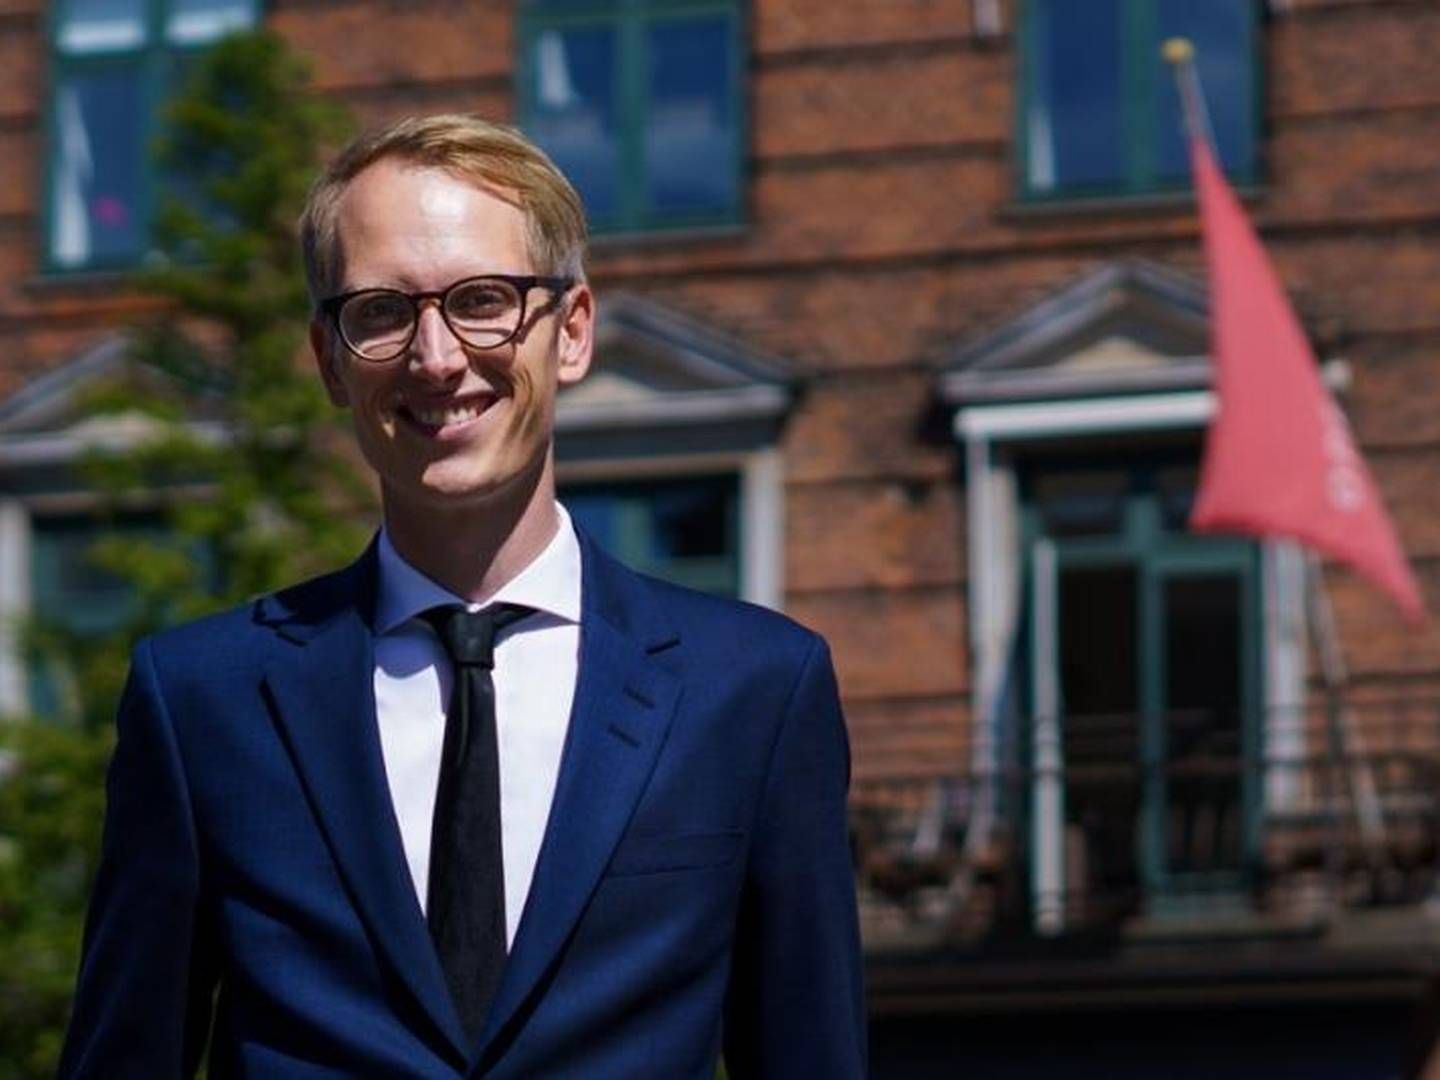 Operates adm. direktør Anders Dybdal (foto) har taget konsekvensen af oplysningerne om en juniorkonsulents deltidsjob i Parlamentet. | Foto: Pr/operate